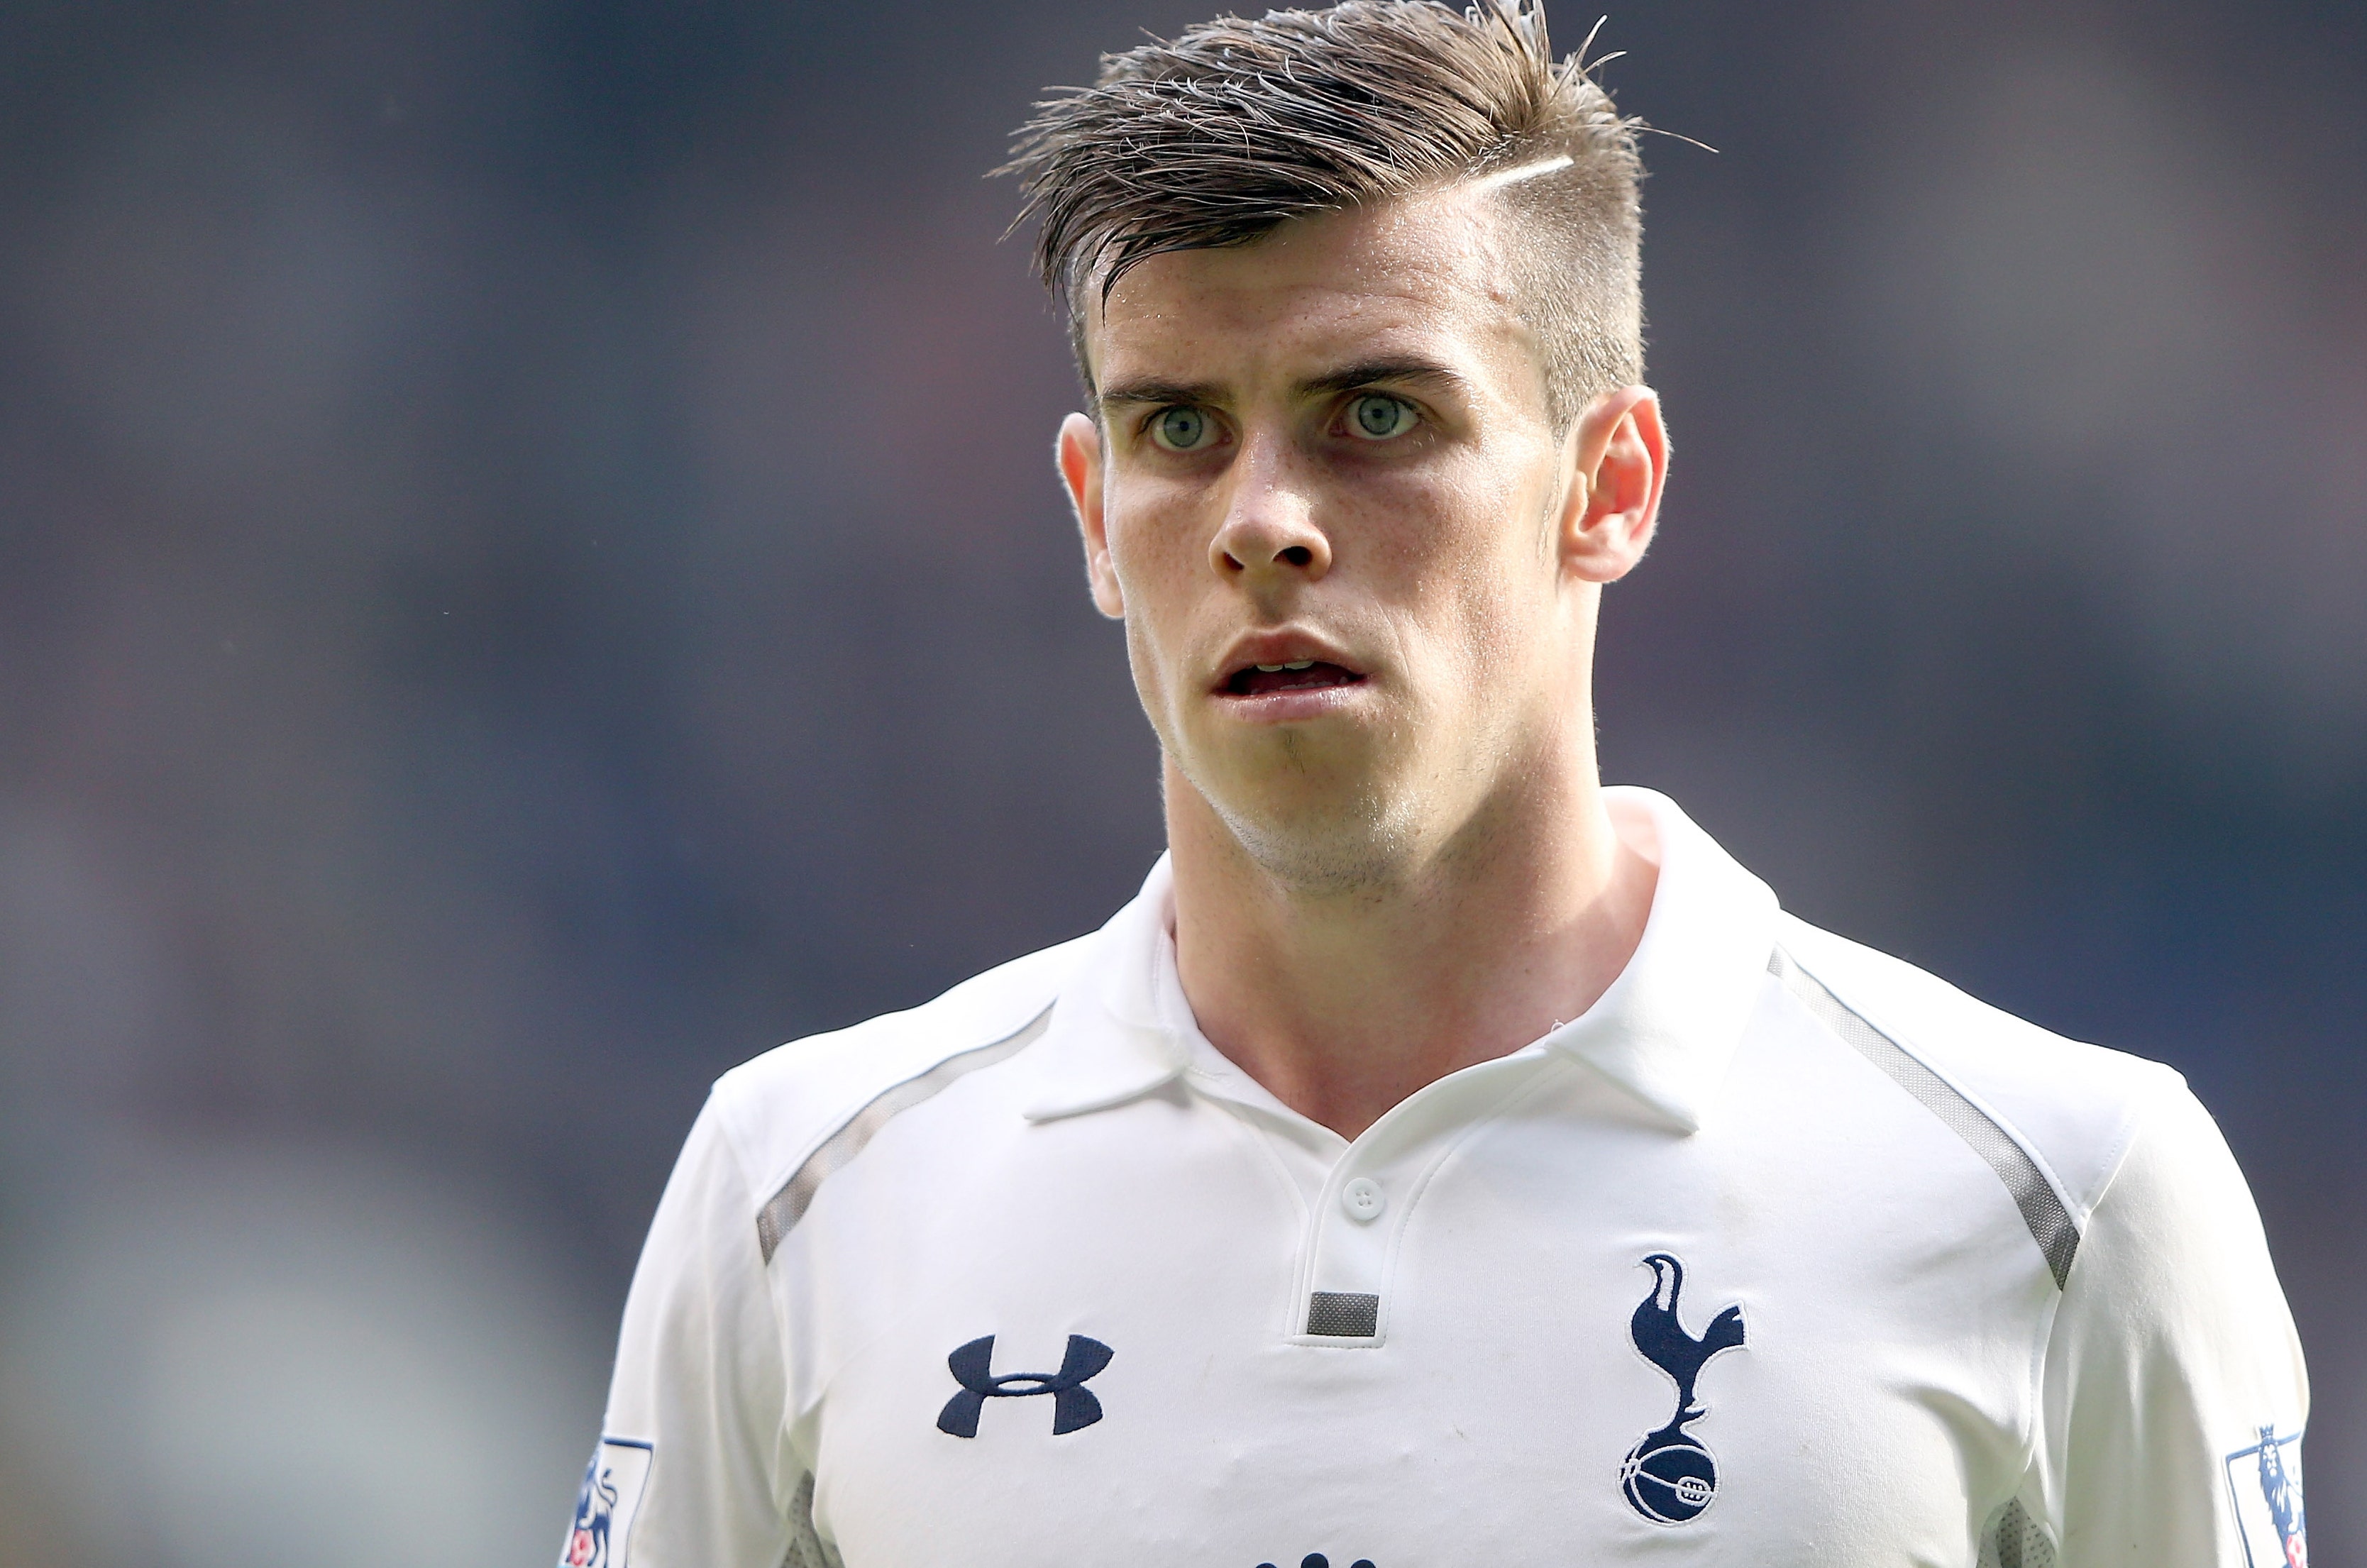 10. Gareth Bale - wide 3